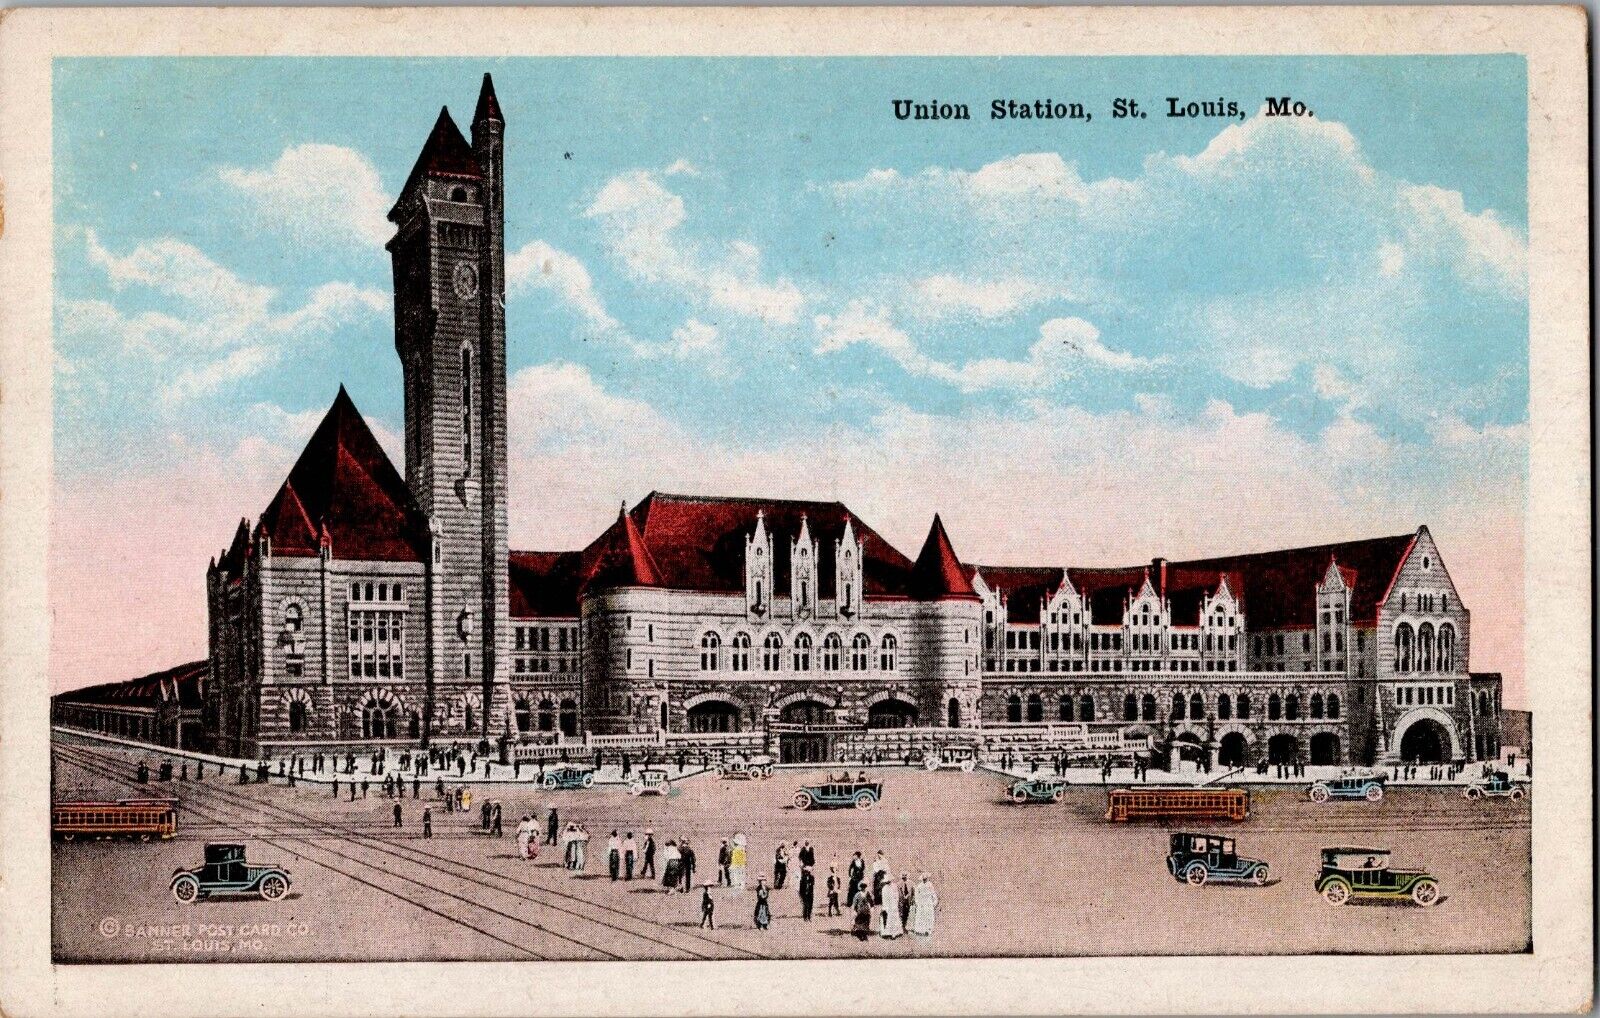 1919 Union Station Train Station St. Louis, Missouri Antique Postcard Railroad